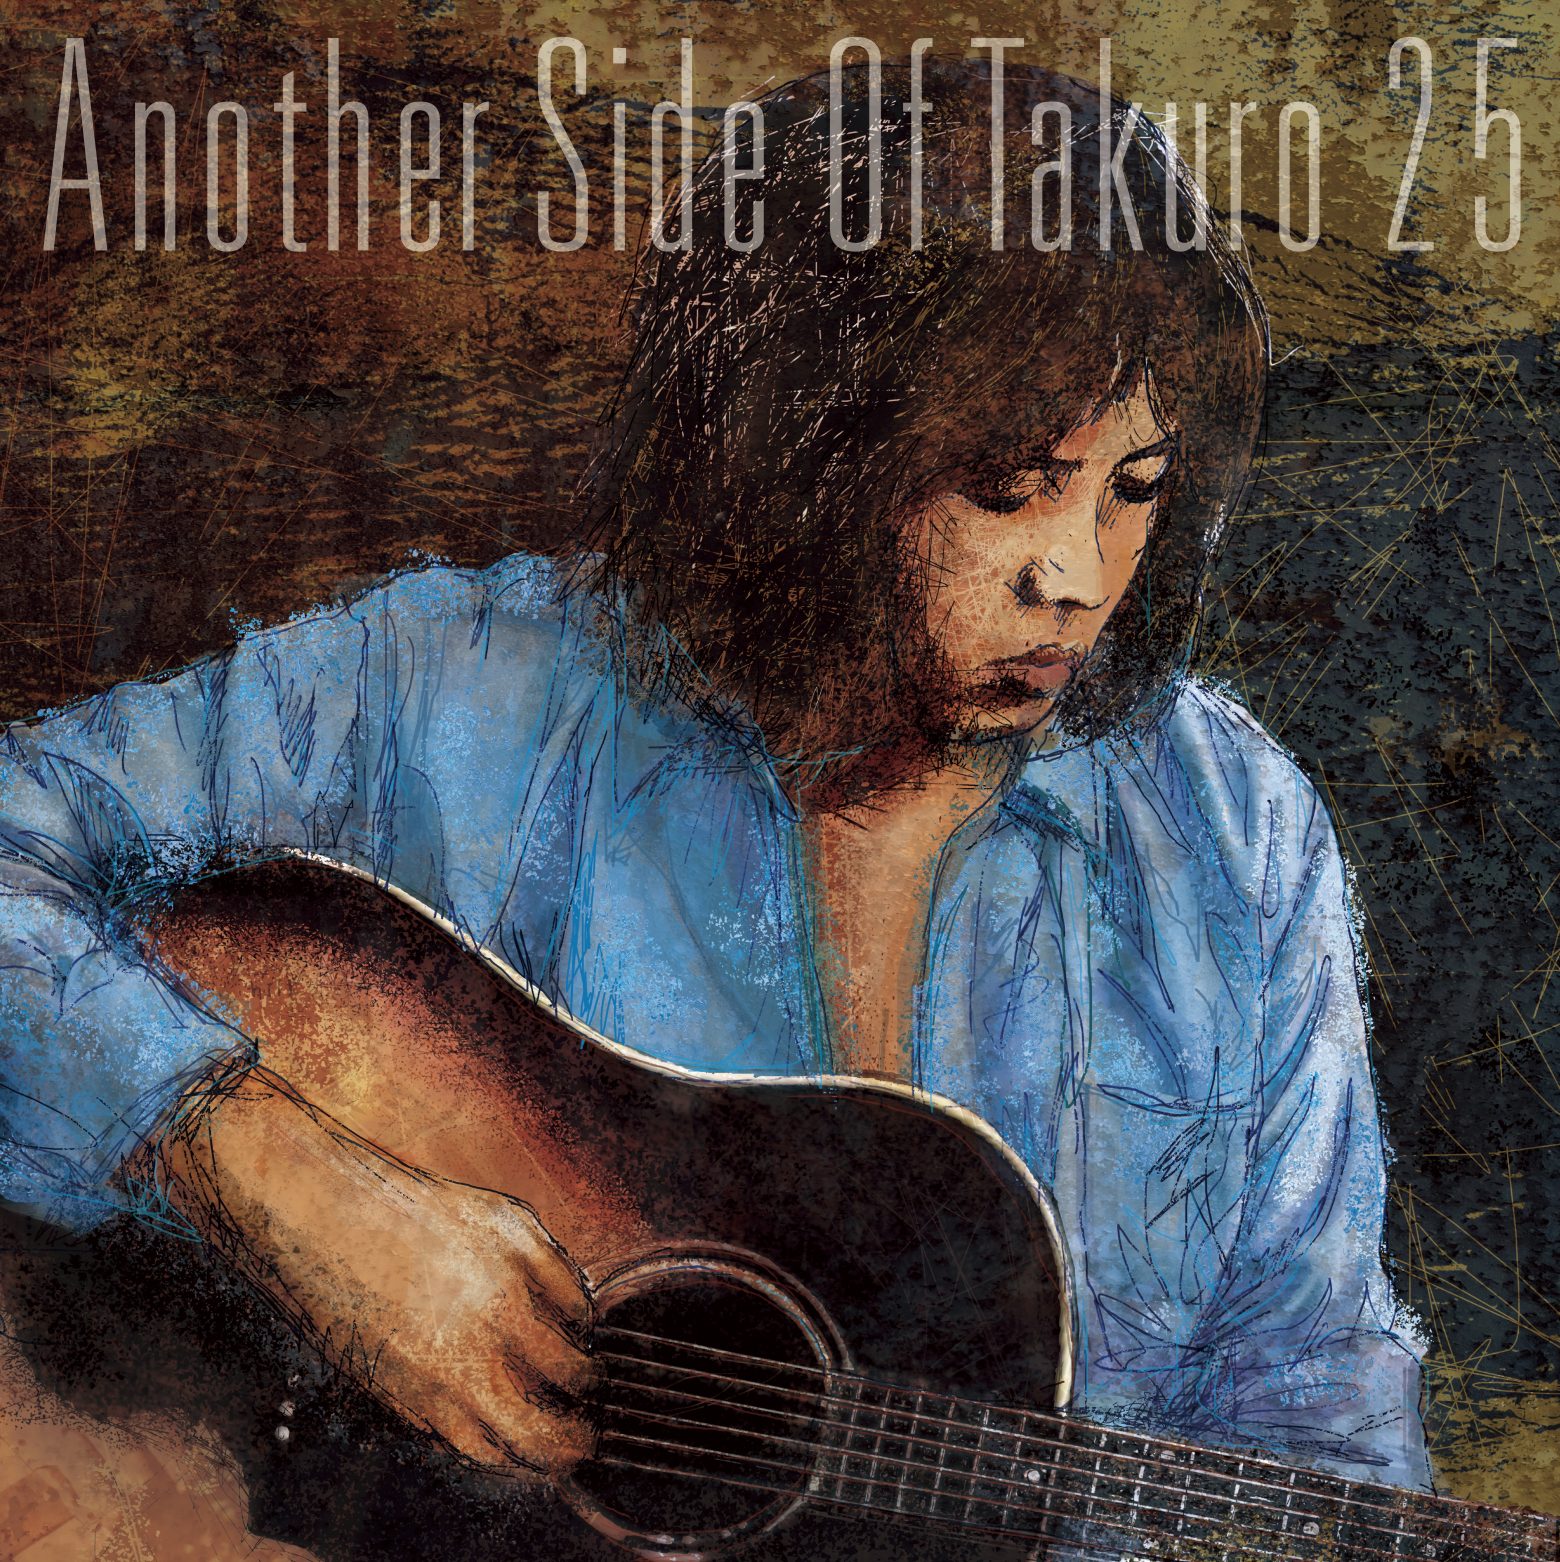 吉田拓郎、自ら選曲したベストアルバム「Another Side Of Takuro 25」発売決定 収録曲・ジャケット・ビジュアルも発表 |  Musicman